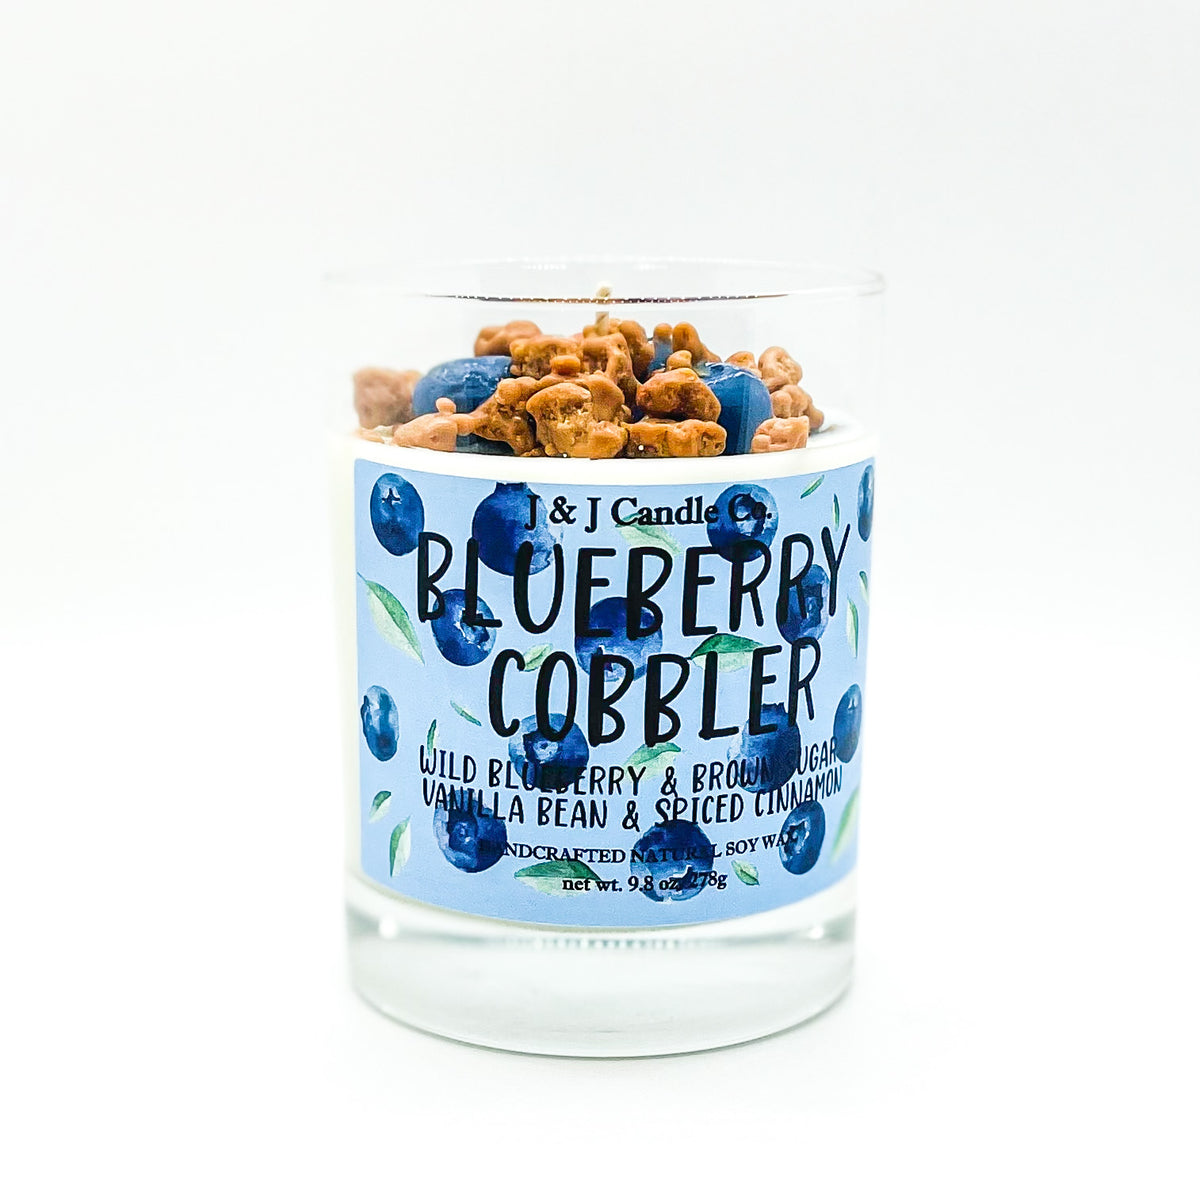 Blueberry Cobbler 7oz Non Toxic Candle